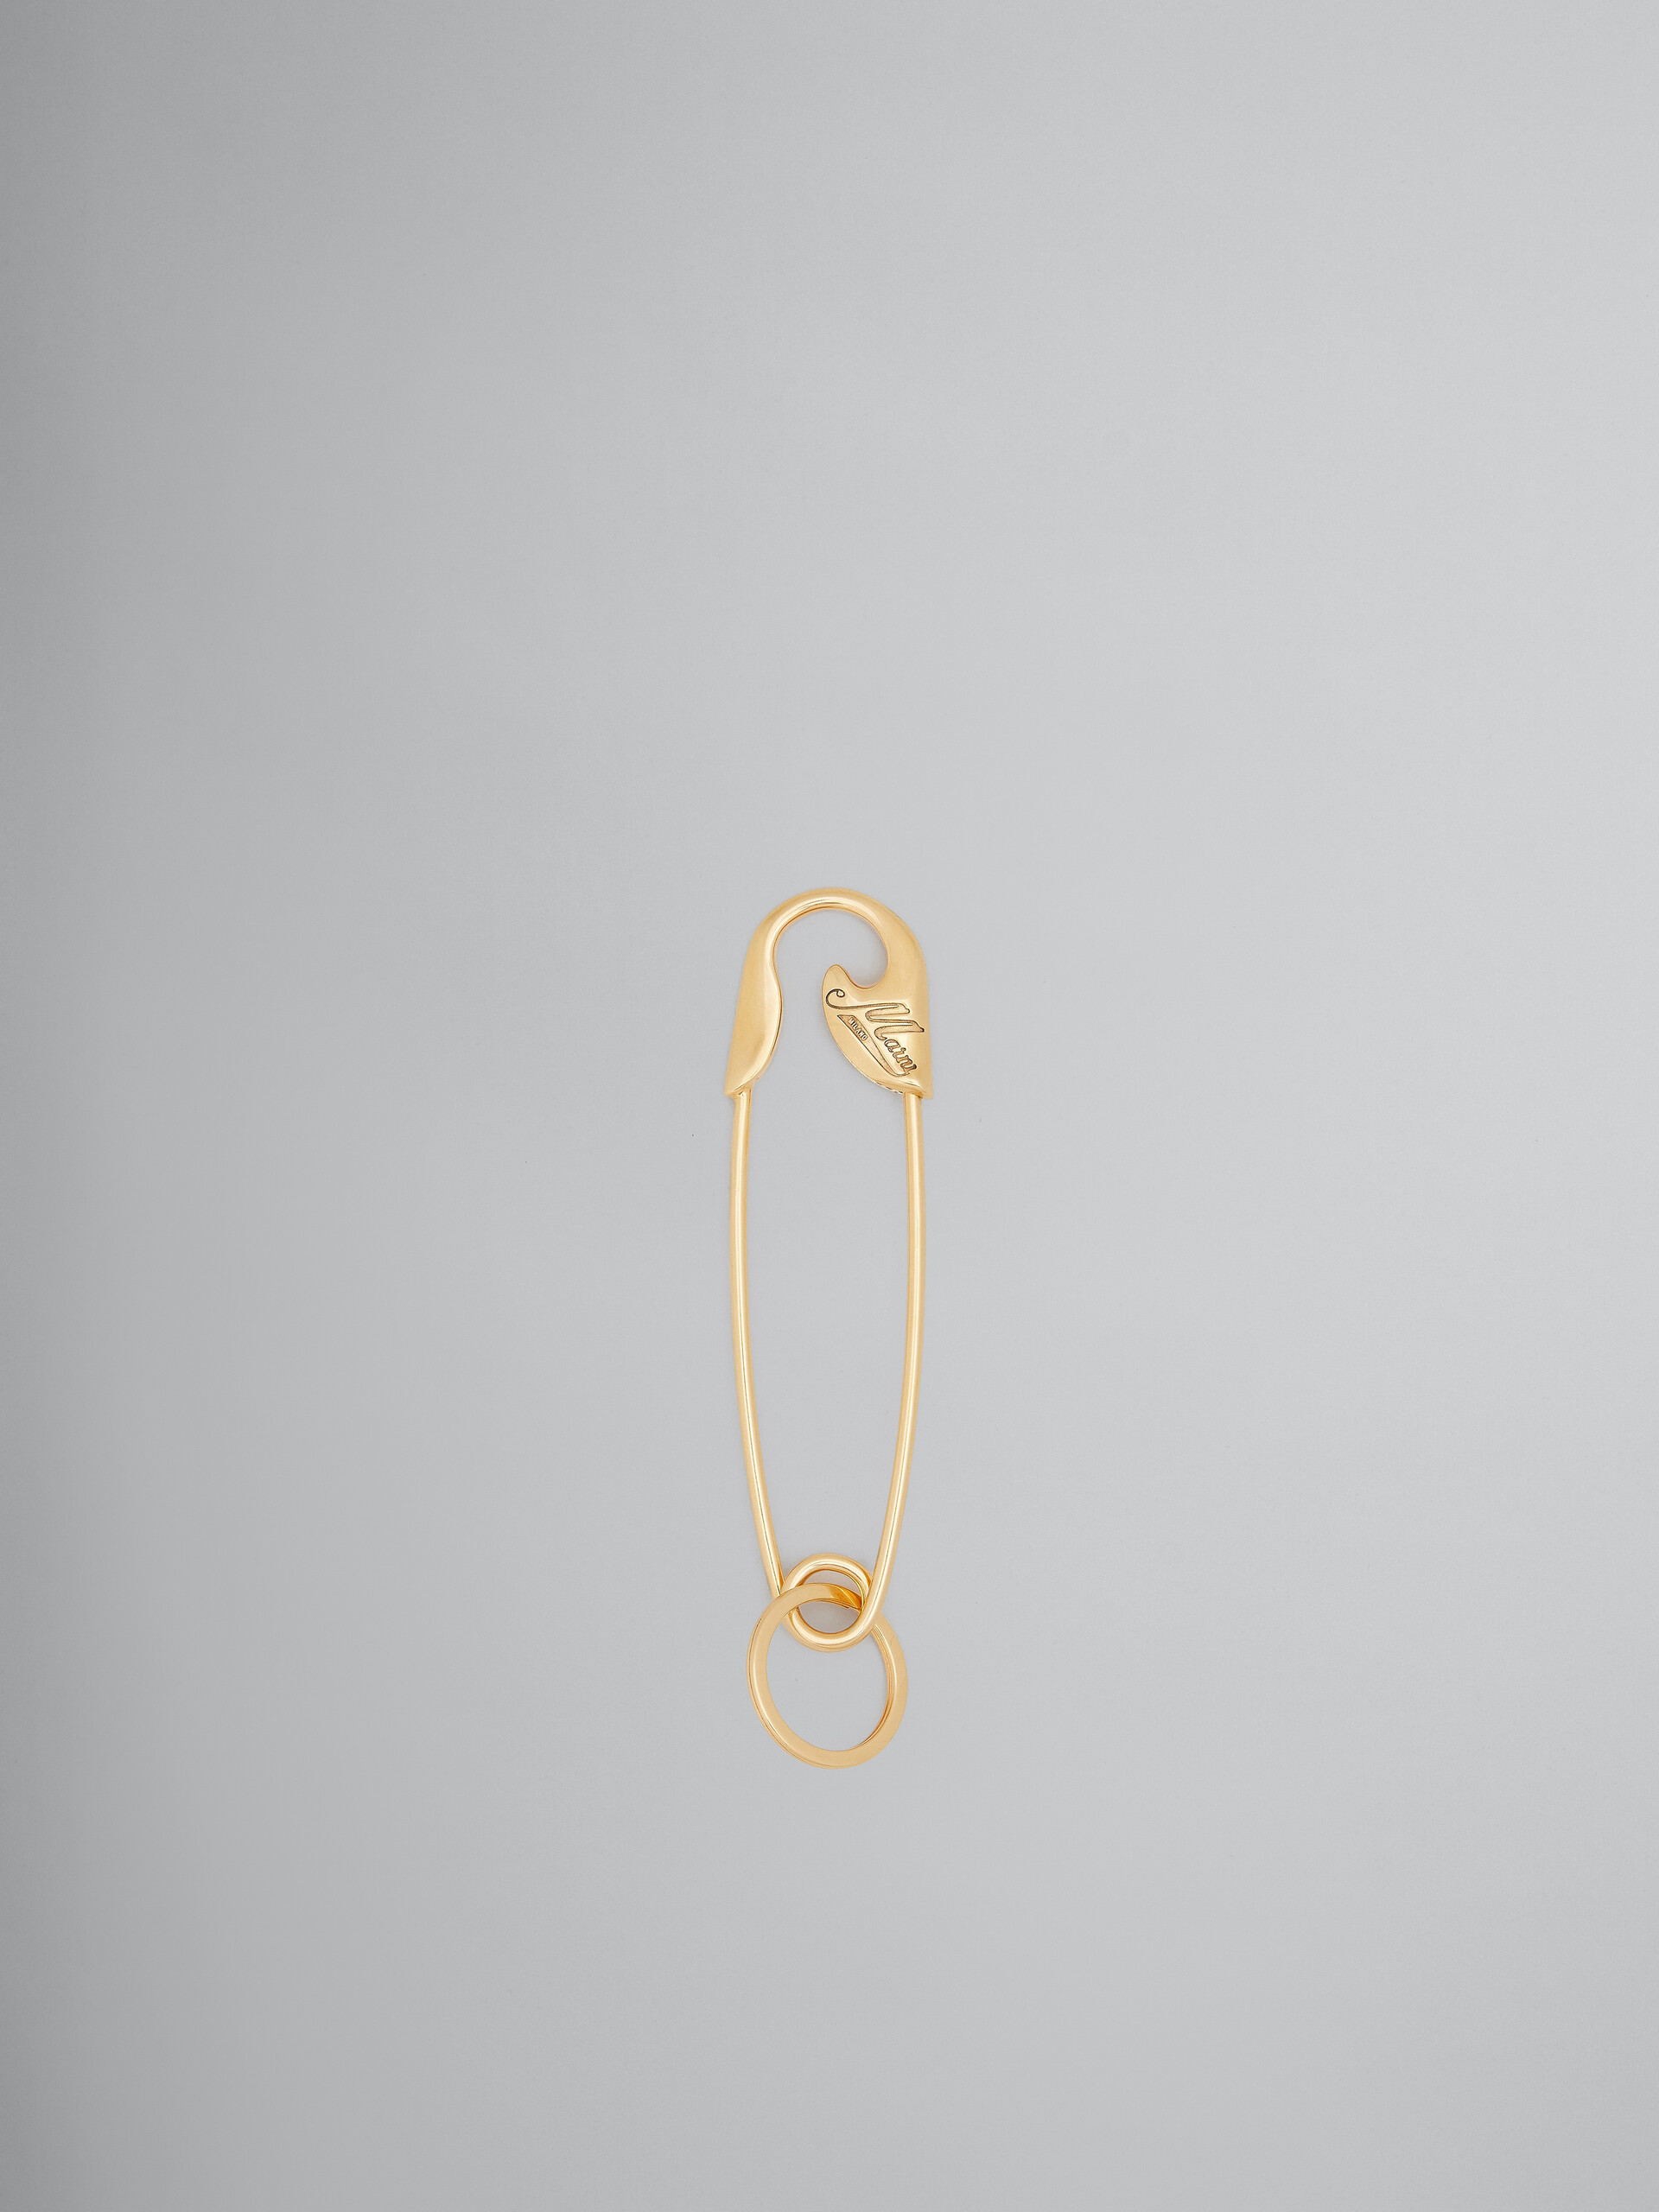 Llavero dorado con forma de imperdible - Joyas - Image 1